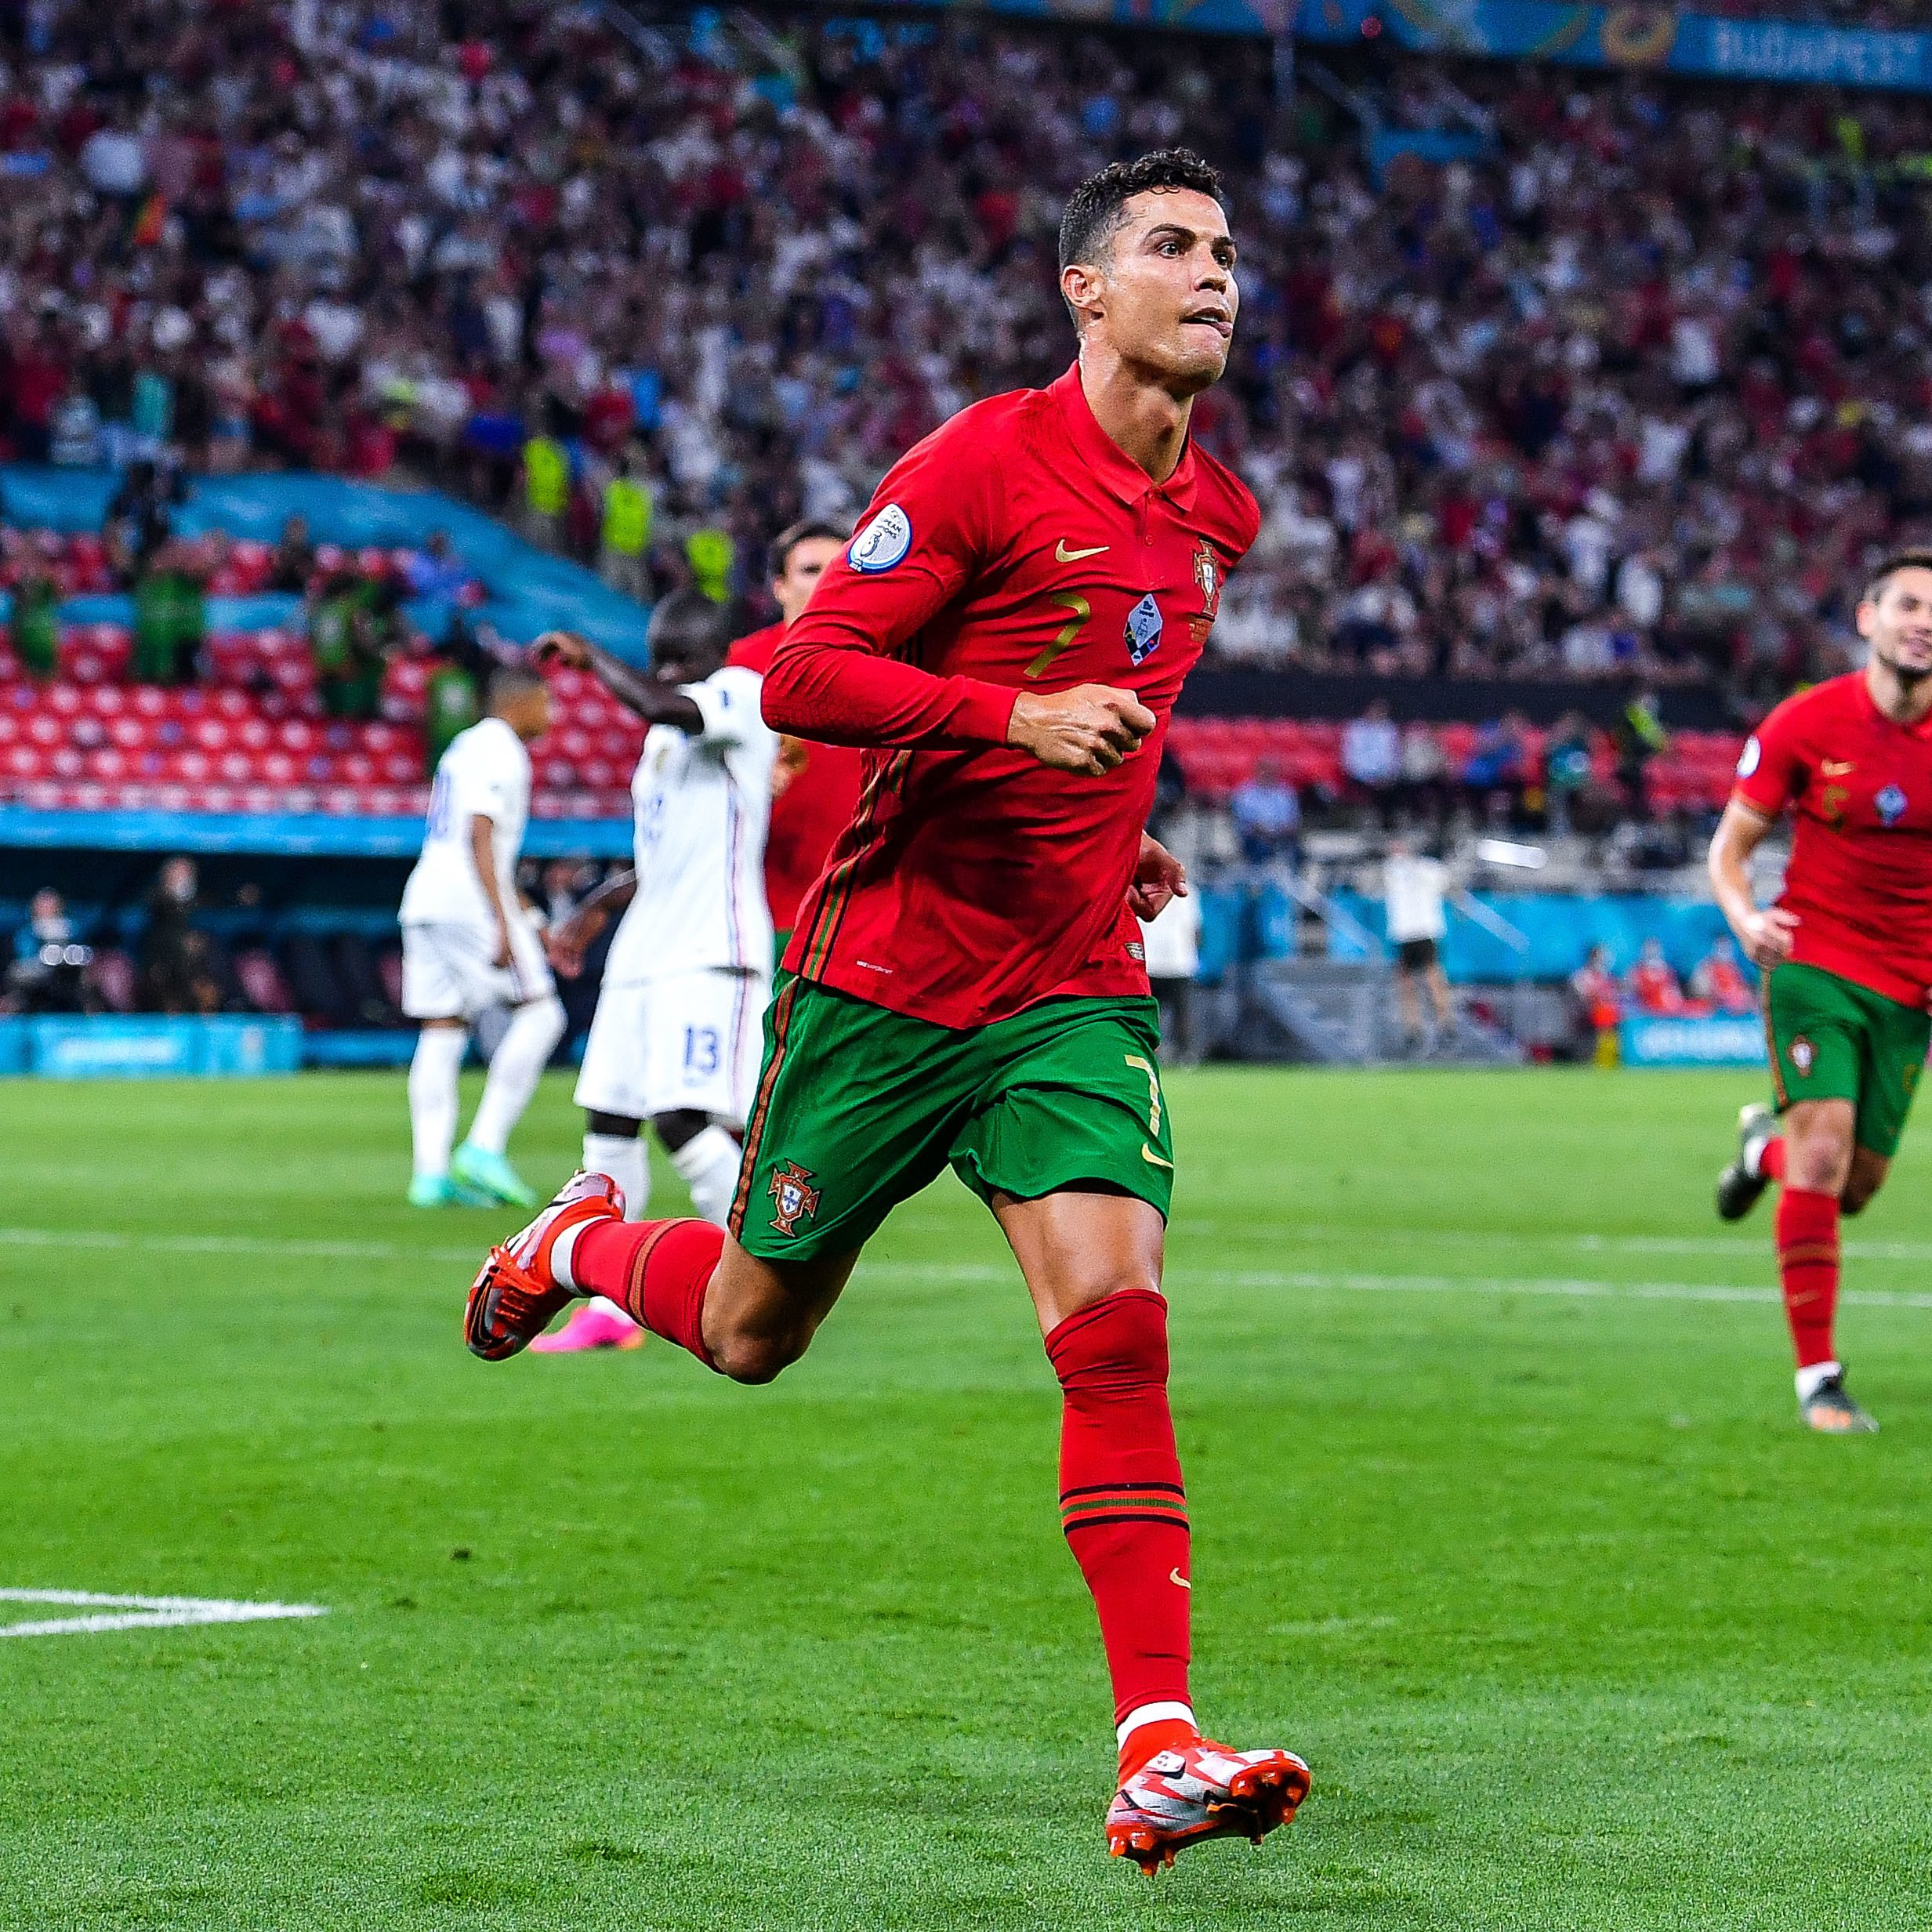 Bồ Đào Nha tiếp tục chinh phục những vòng loại World Cup đầy khó khăn để giành tấm vé vào giải đấu lớn nhất hành tinh. Đây là cơ hội để đội tuyển chứng tỏ bản lĩnh của mình, và chiến thắng trước đối thủ Ireland sẽ là một bước ngoặt quan trọng.